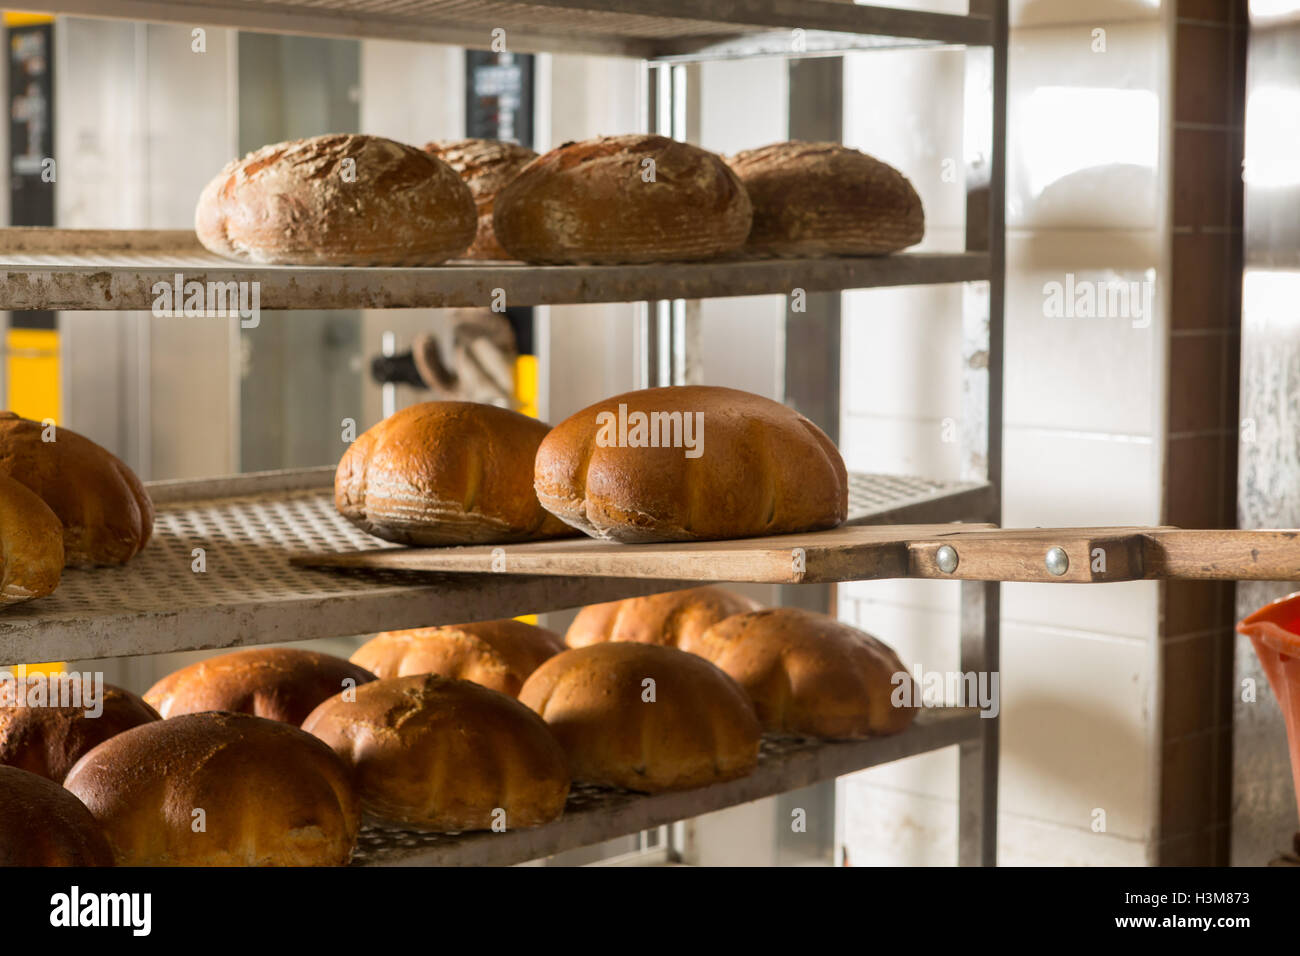 Frisch gebackene Brote aus dem Ofen gezogen. Das Konzept der Bäckerei und Konditorei Geschäfte. Stockfoto